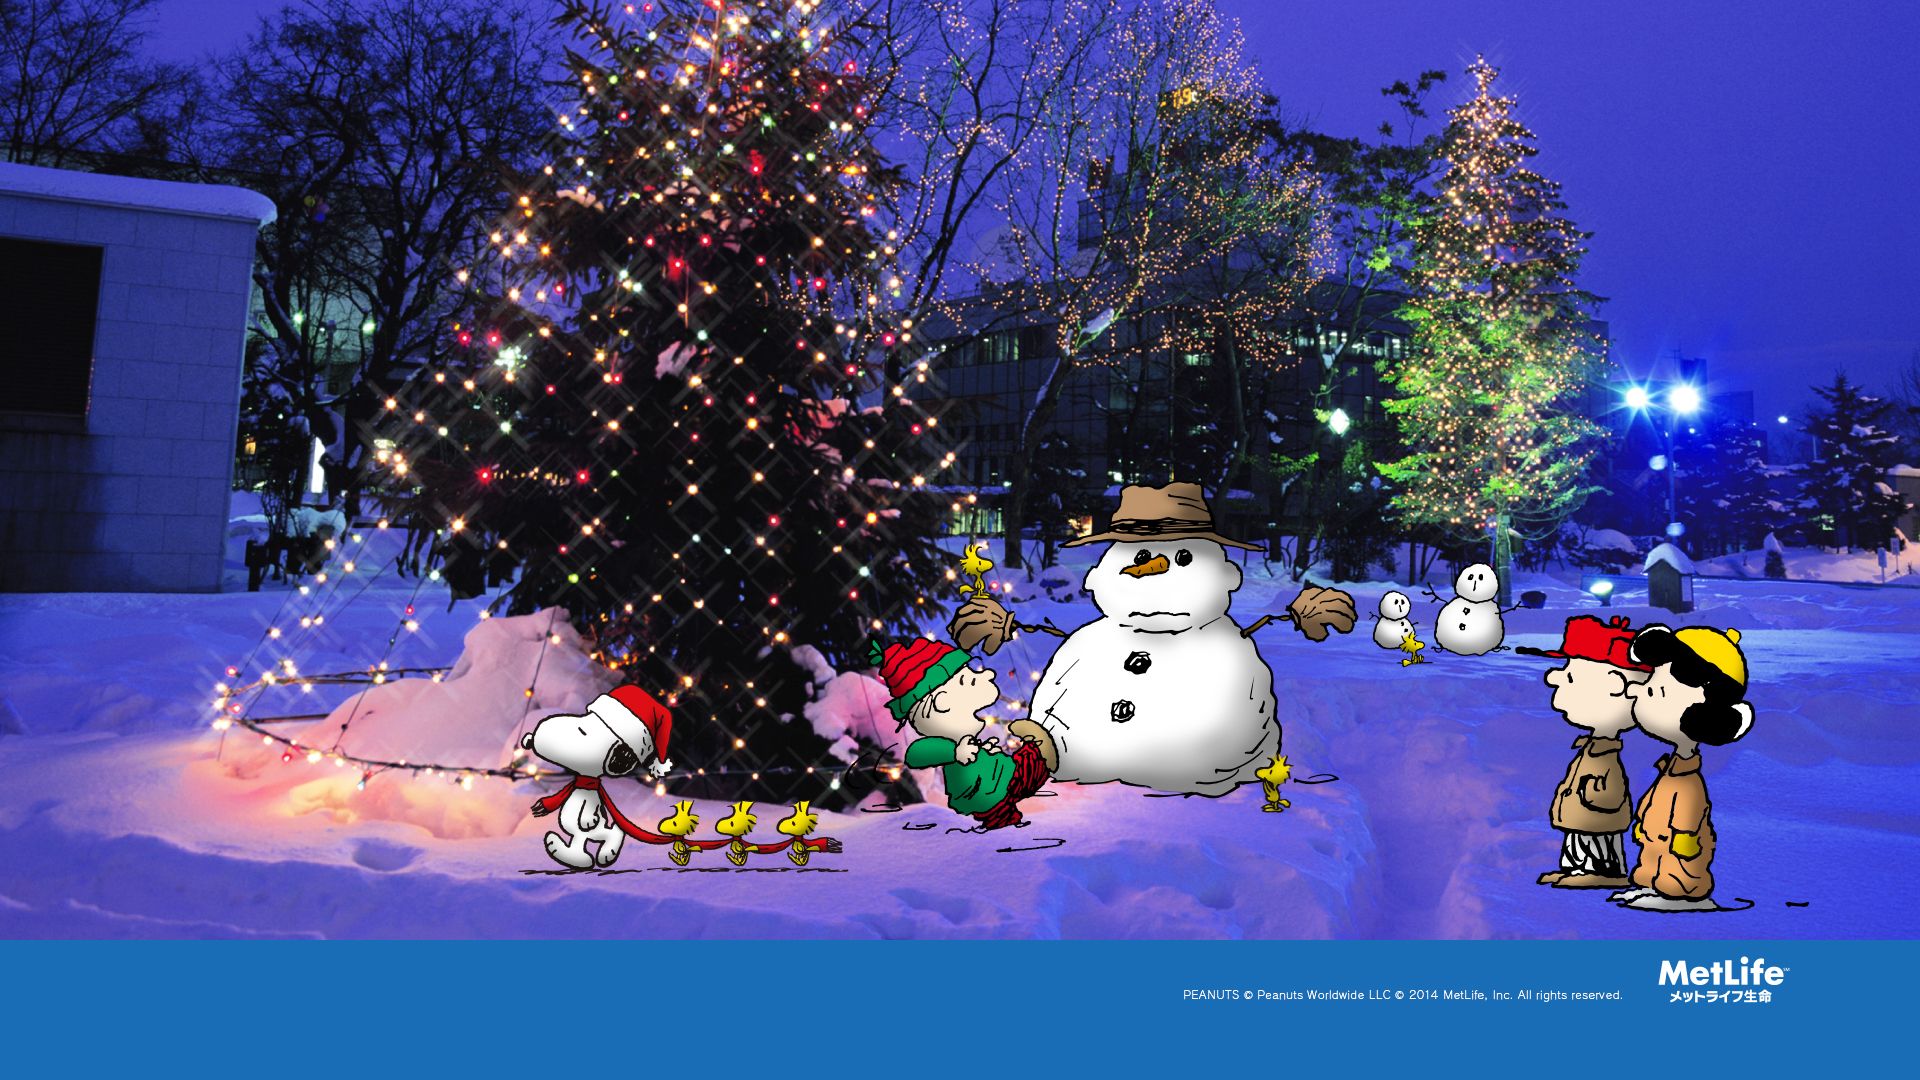 snoopy weihnachtstapete,weihnachtsbaum,schneemann,winter,schnee,weihnachten